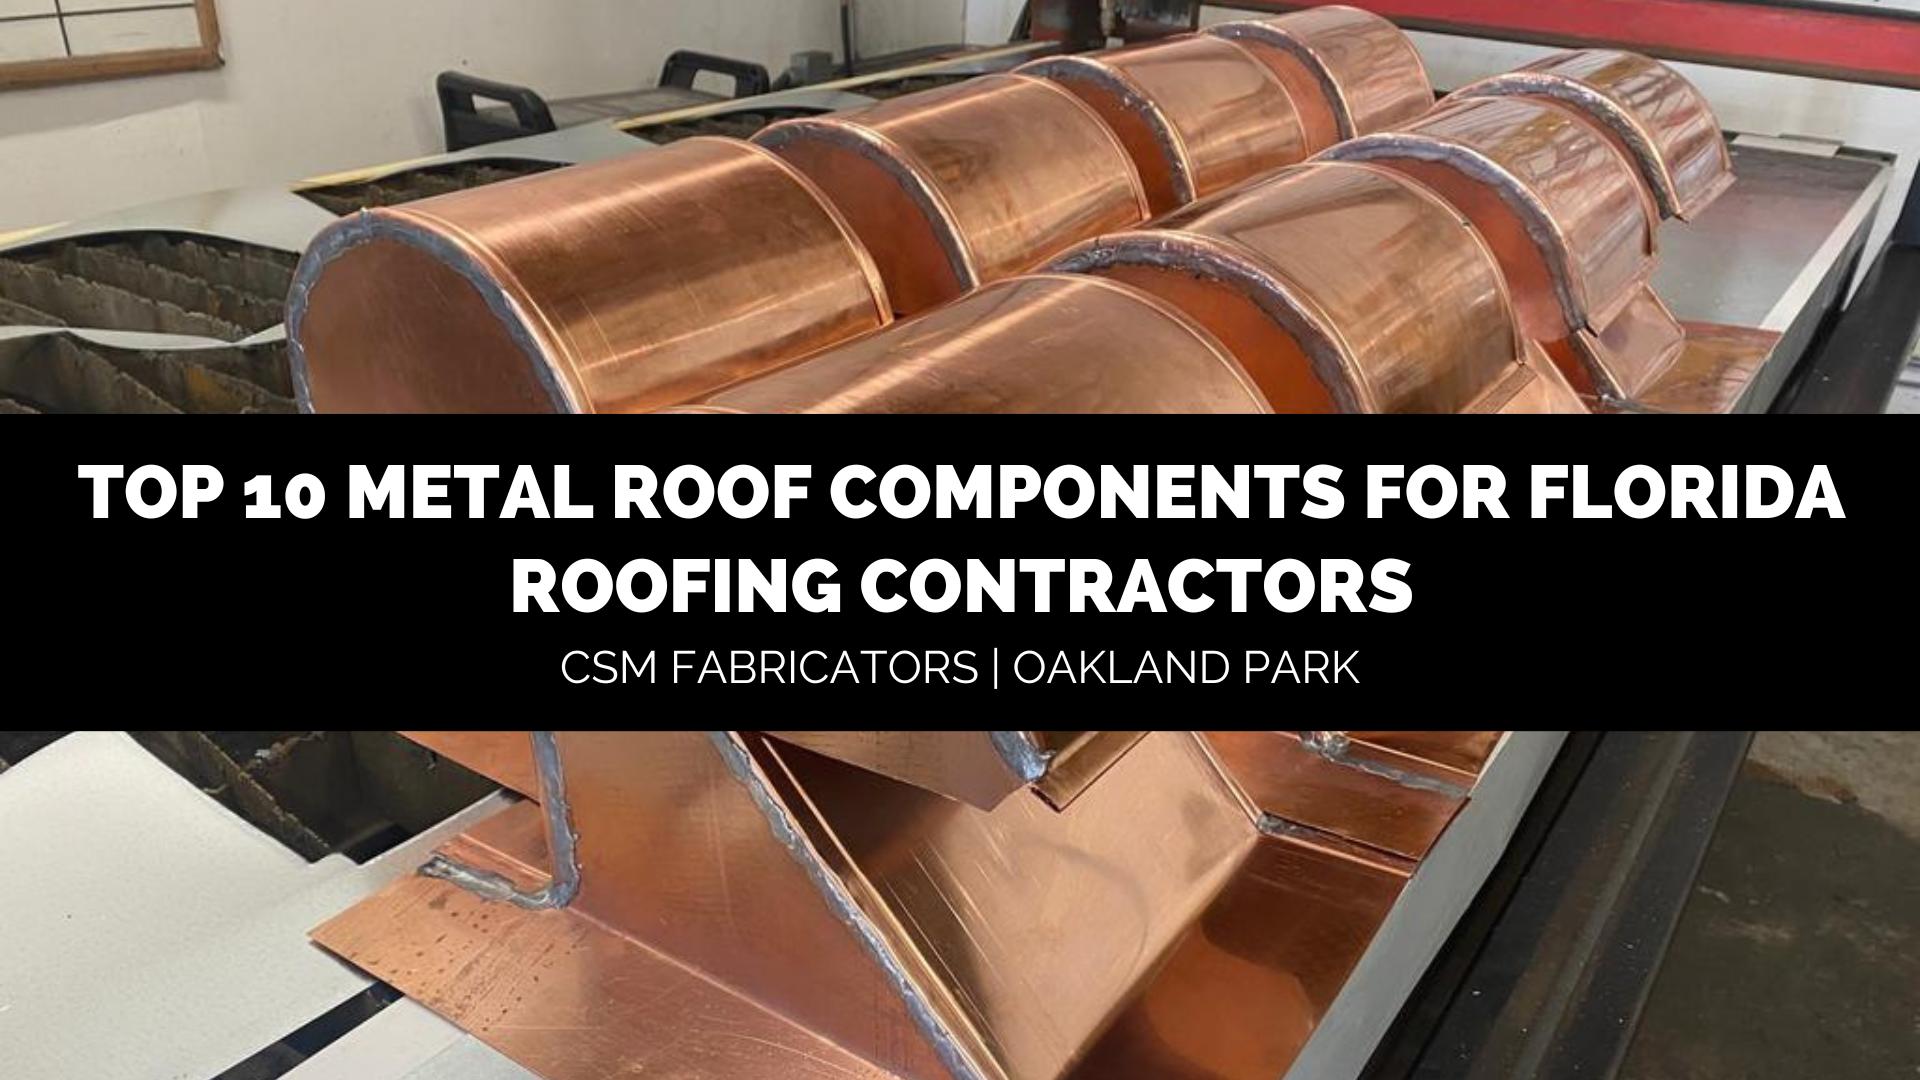 top 10 metal roof components for Florida roofING CONTRACTORS CSM Fabricators Oakland Park Florida